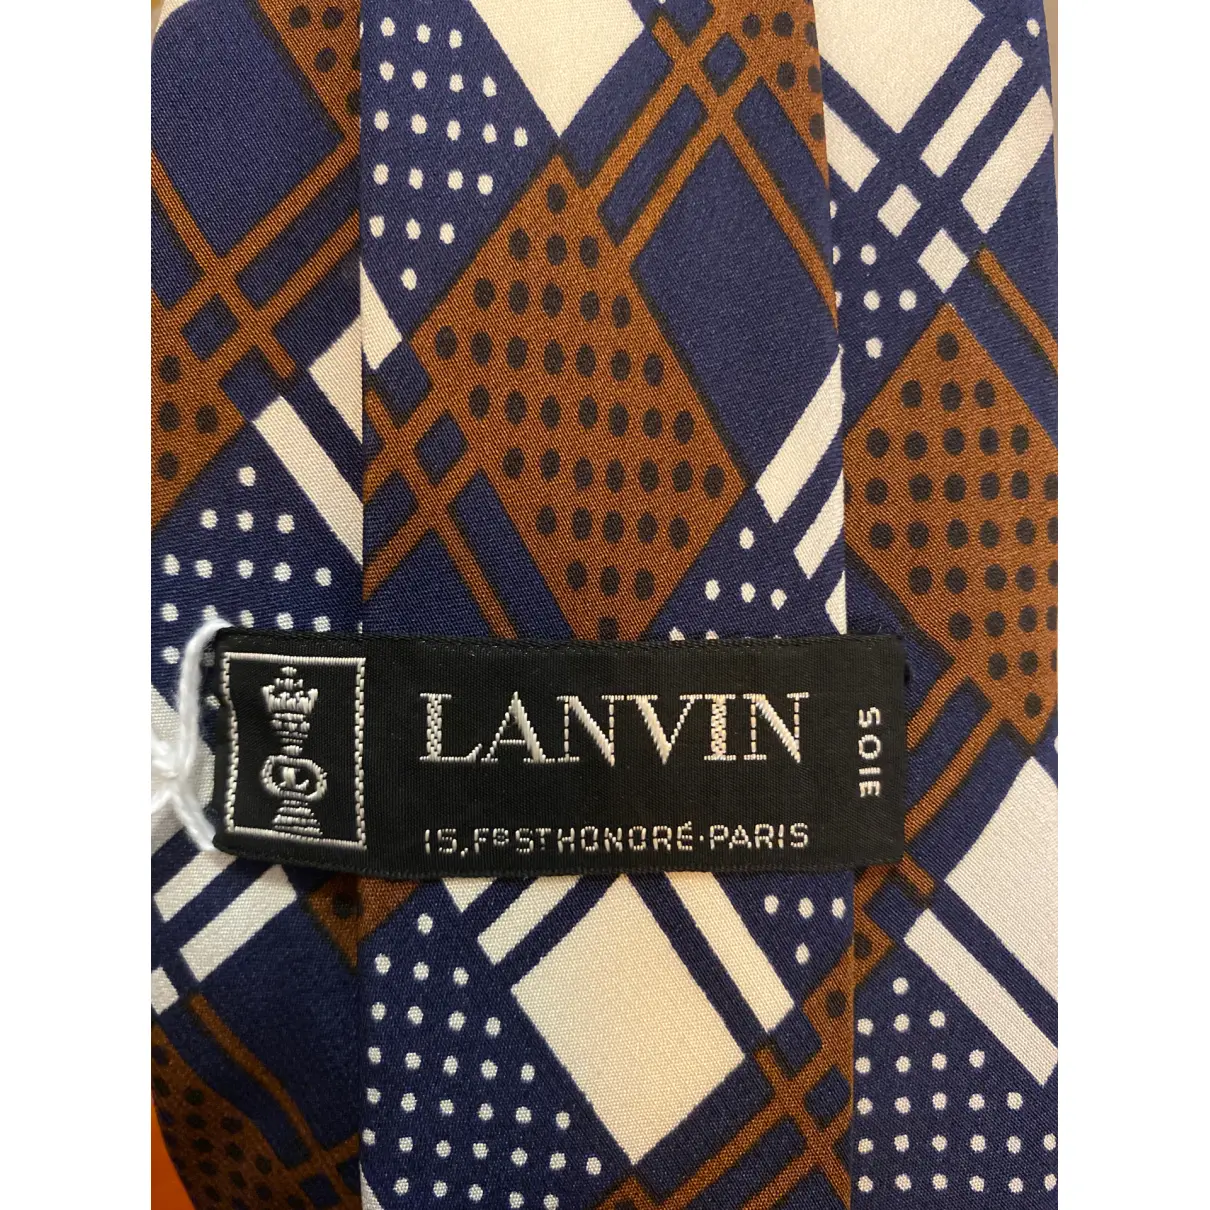 Buy Lanvin Silk tie online